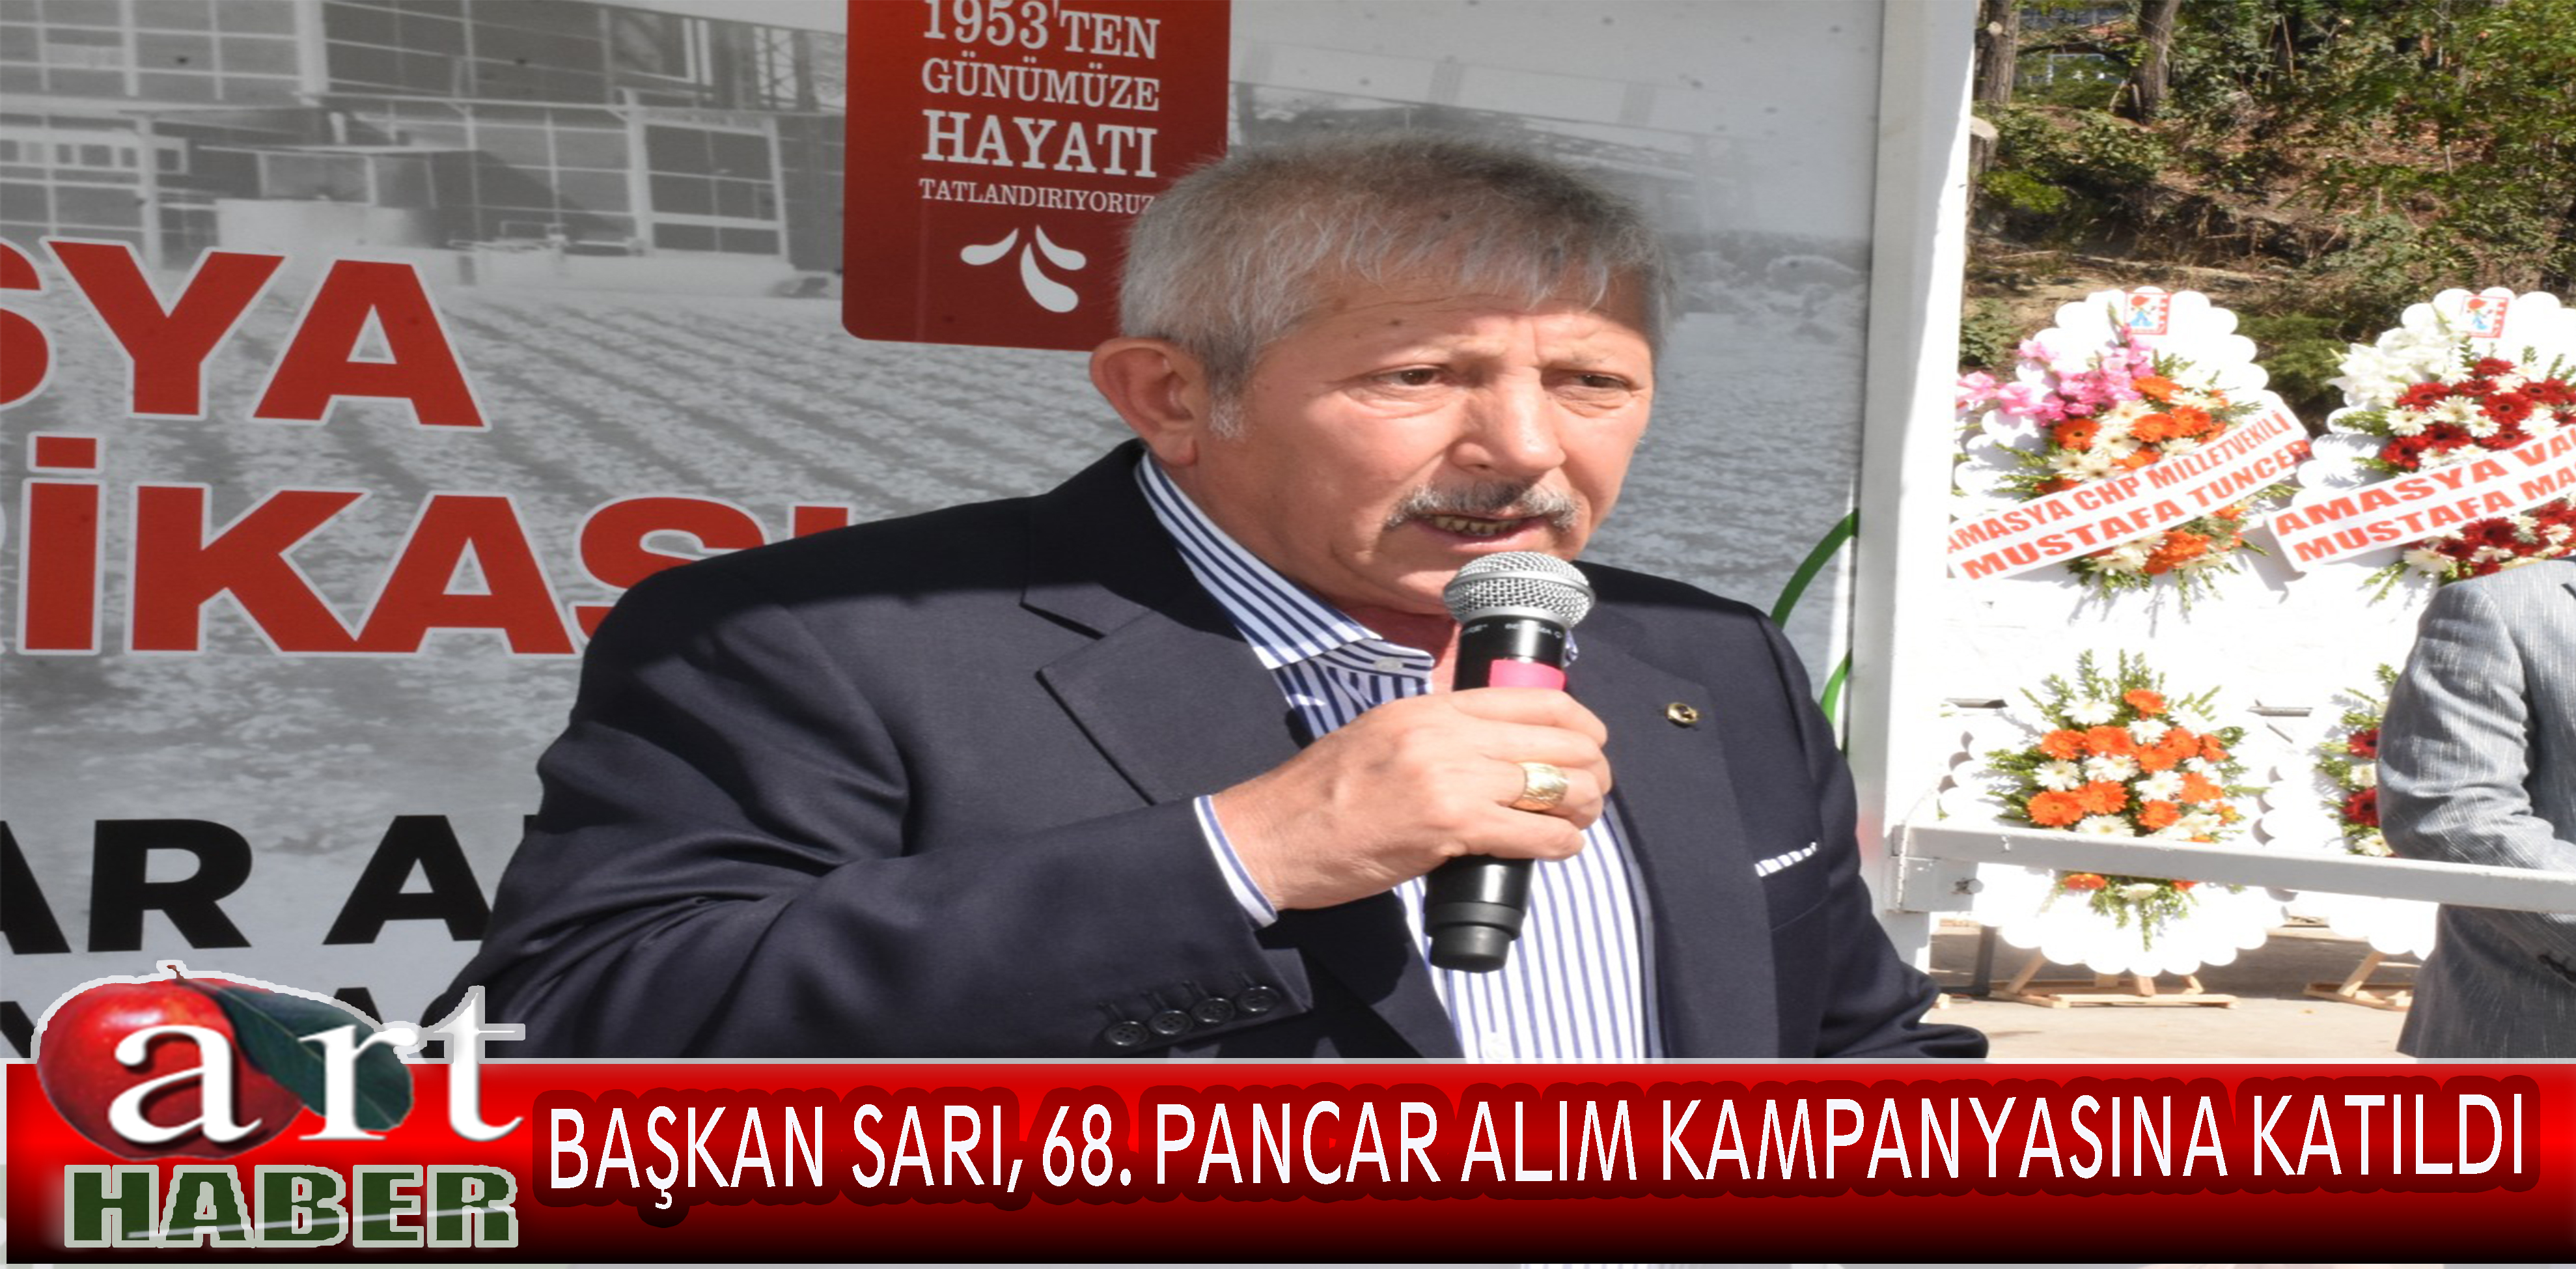 Amasya Belediye Başkanı Mehmet Sarı, Şeker Fabrikası‘nın 68’inci pancar alım kampanyası açılış törenine katıldı.